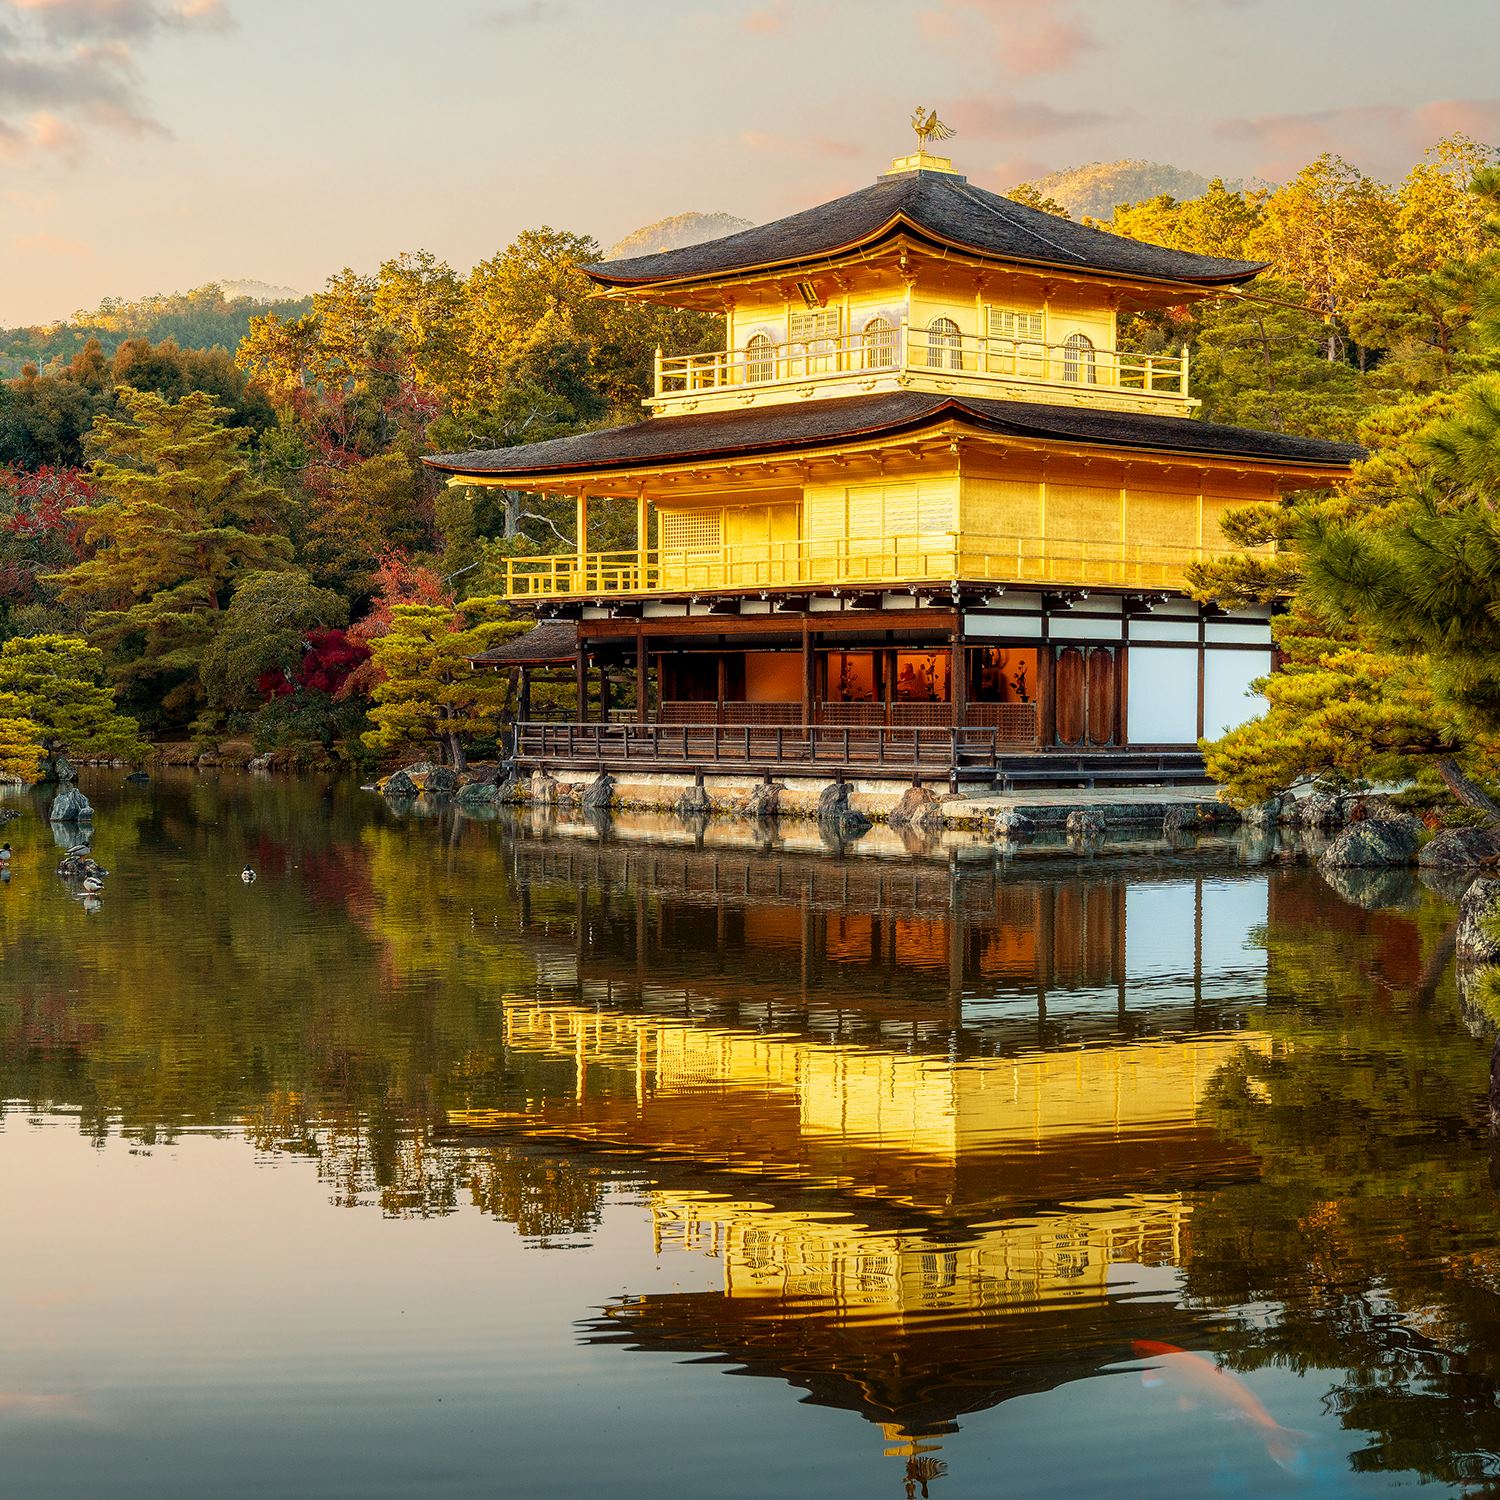 Golden Pavilion of Kinkaku-ji, Kyoto